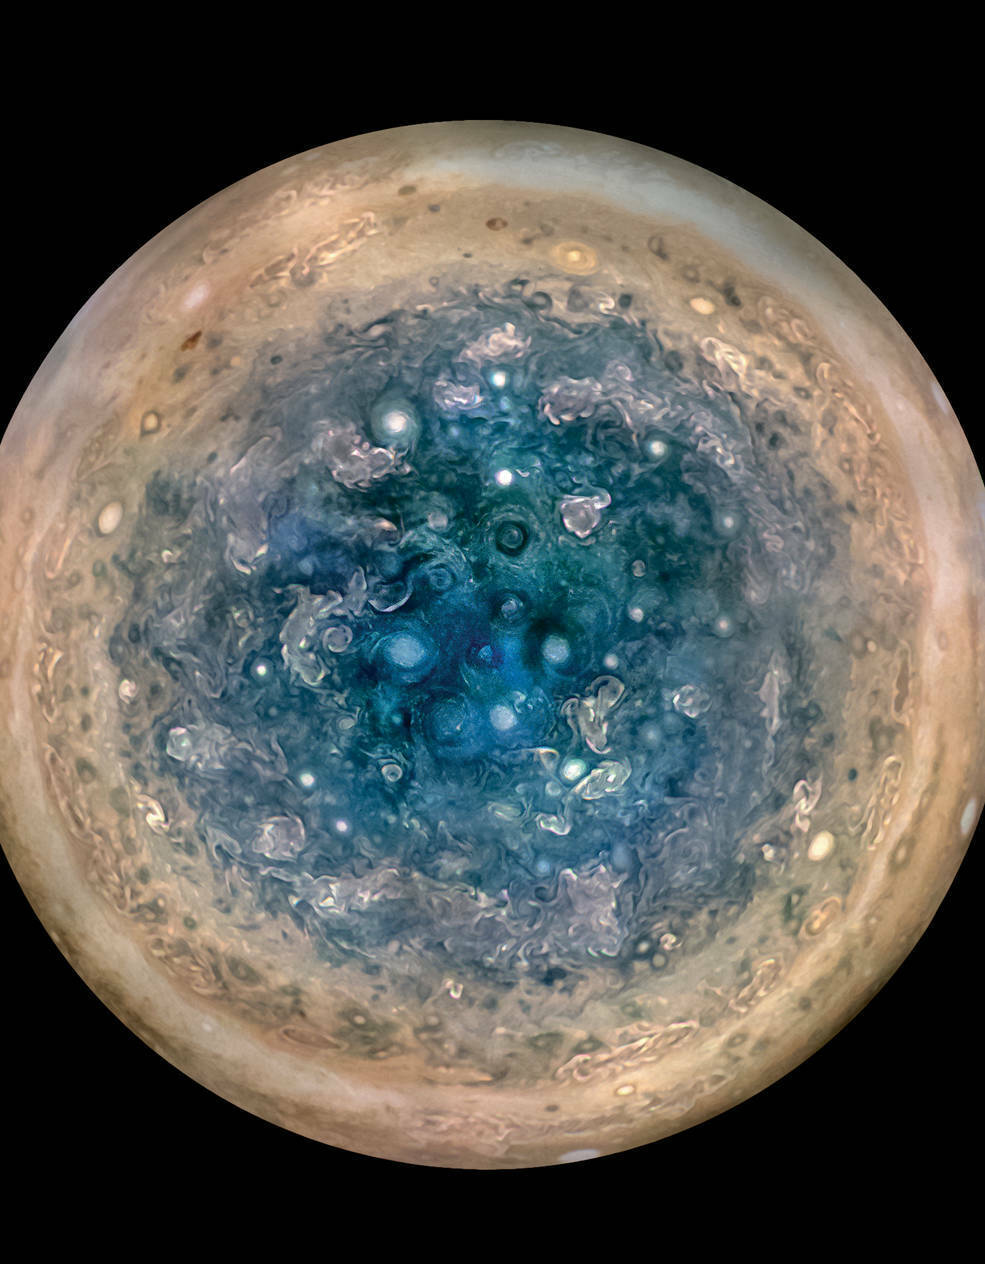 Νέα στοιχεία για τον Δία αποκαλύπτει το διαστημικό σκάφος Juno